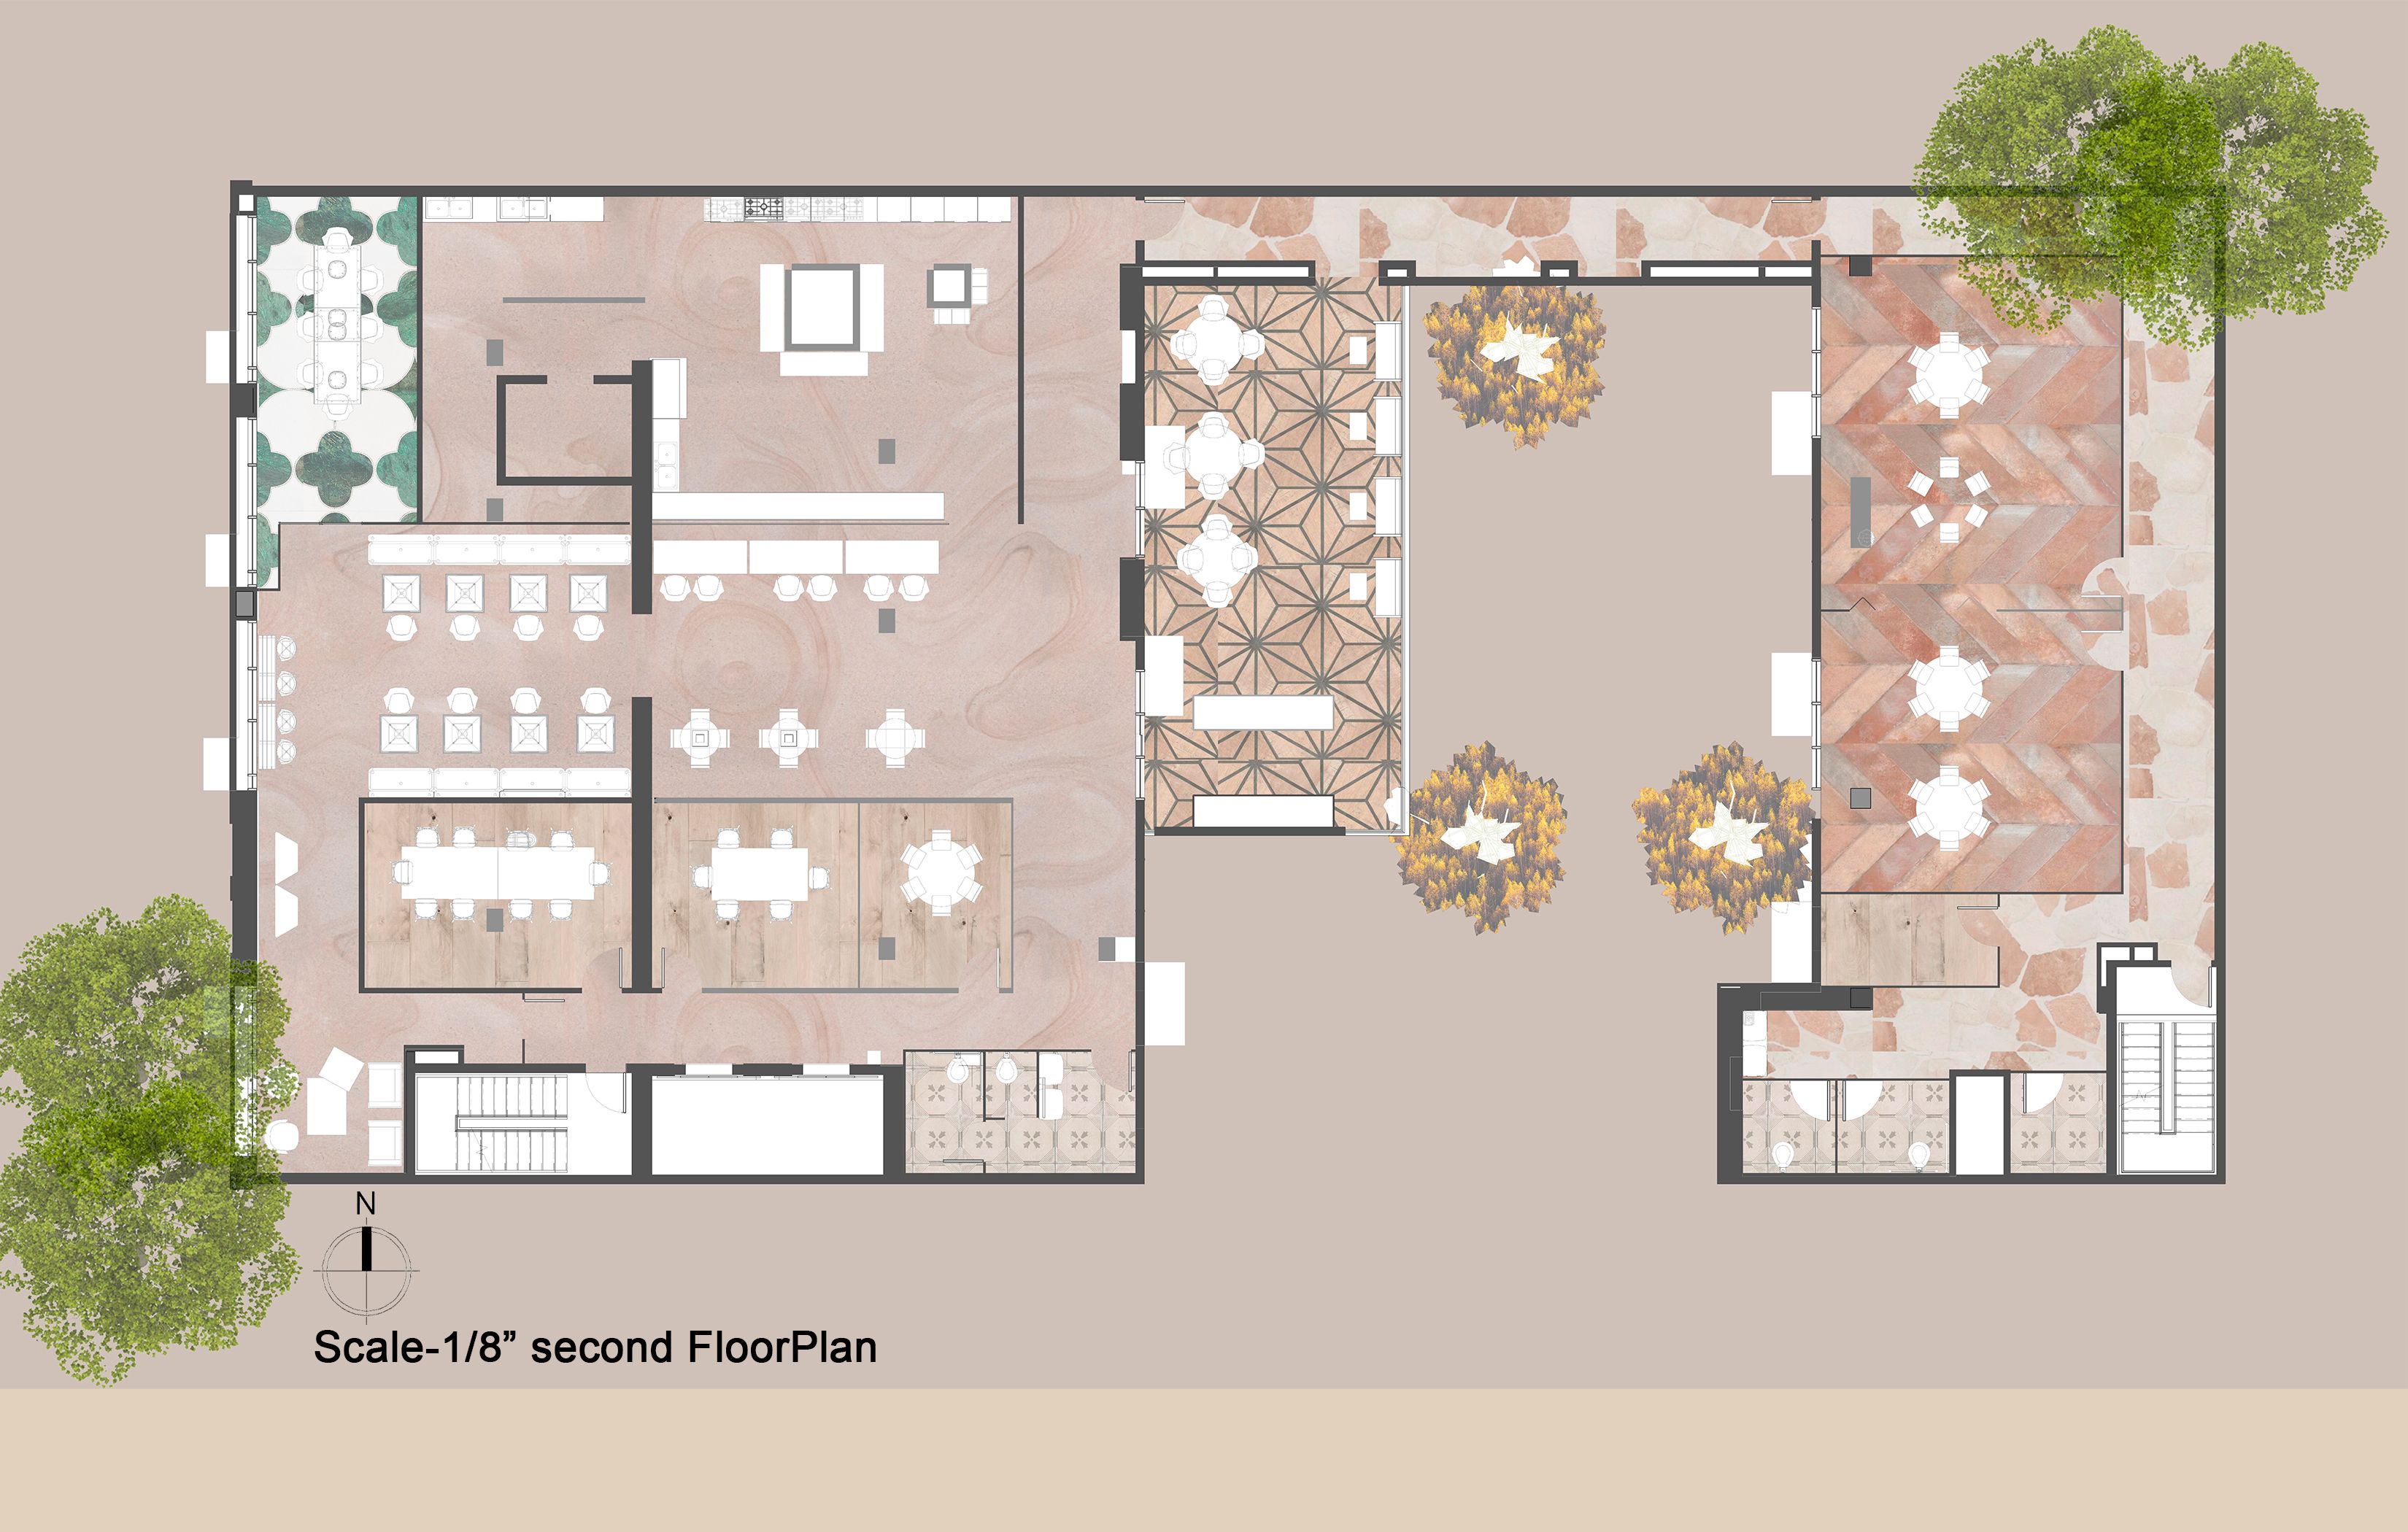 Second Floorplan - Juhi Vyas